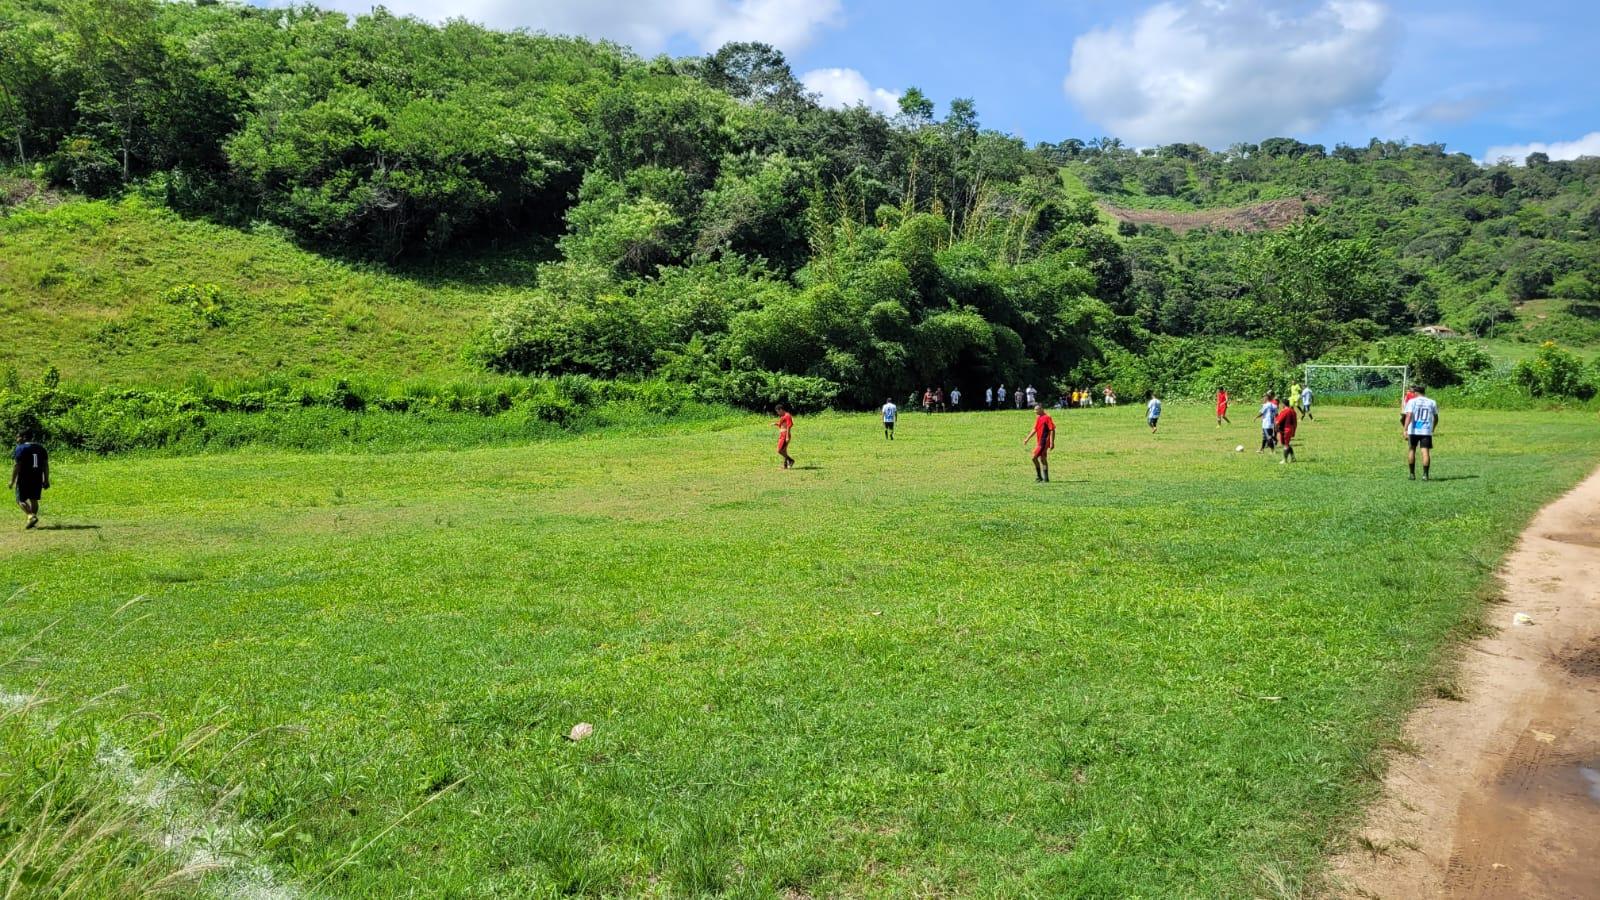 Pilõezinhos realiza abertura da II edição do Campeonato de Futebol da Zona Rural